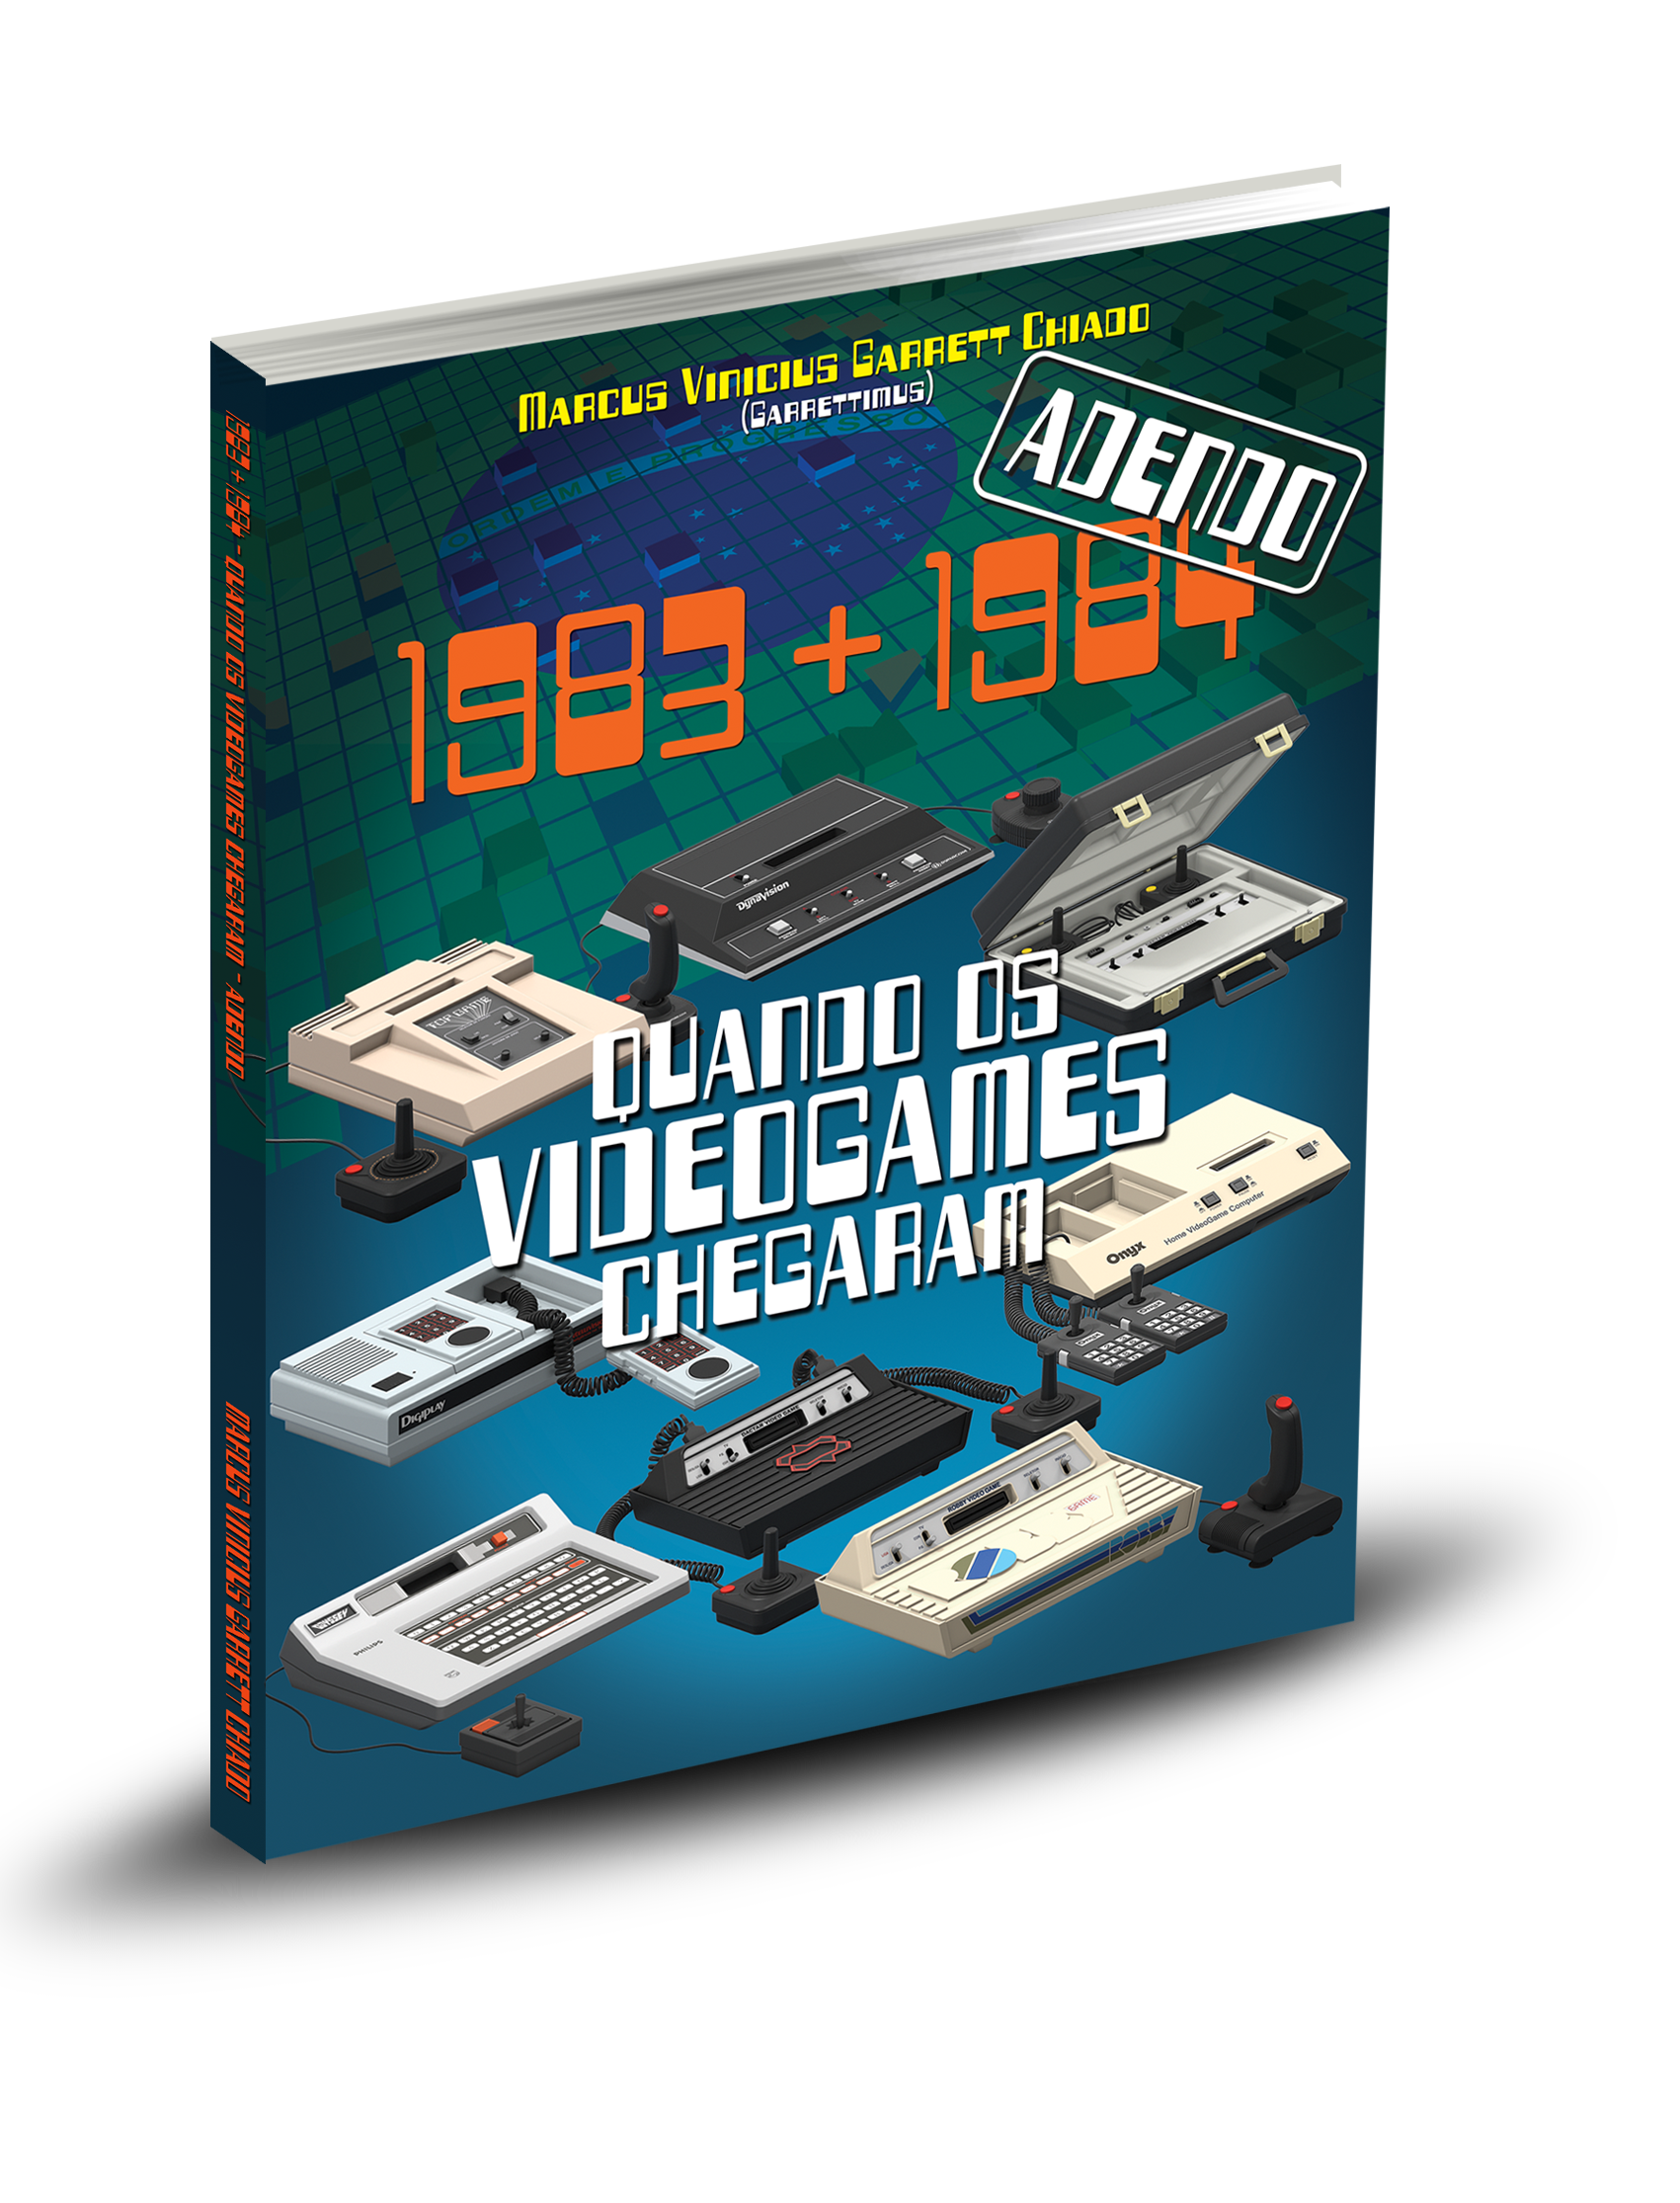 1983+1984: Quando os Videogames Chegaram – Adendo